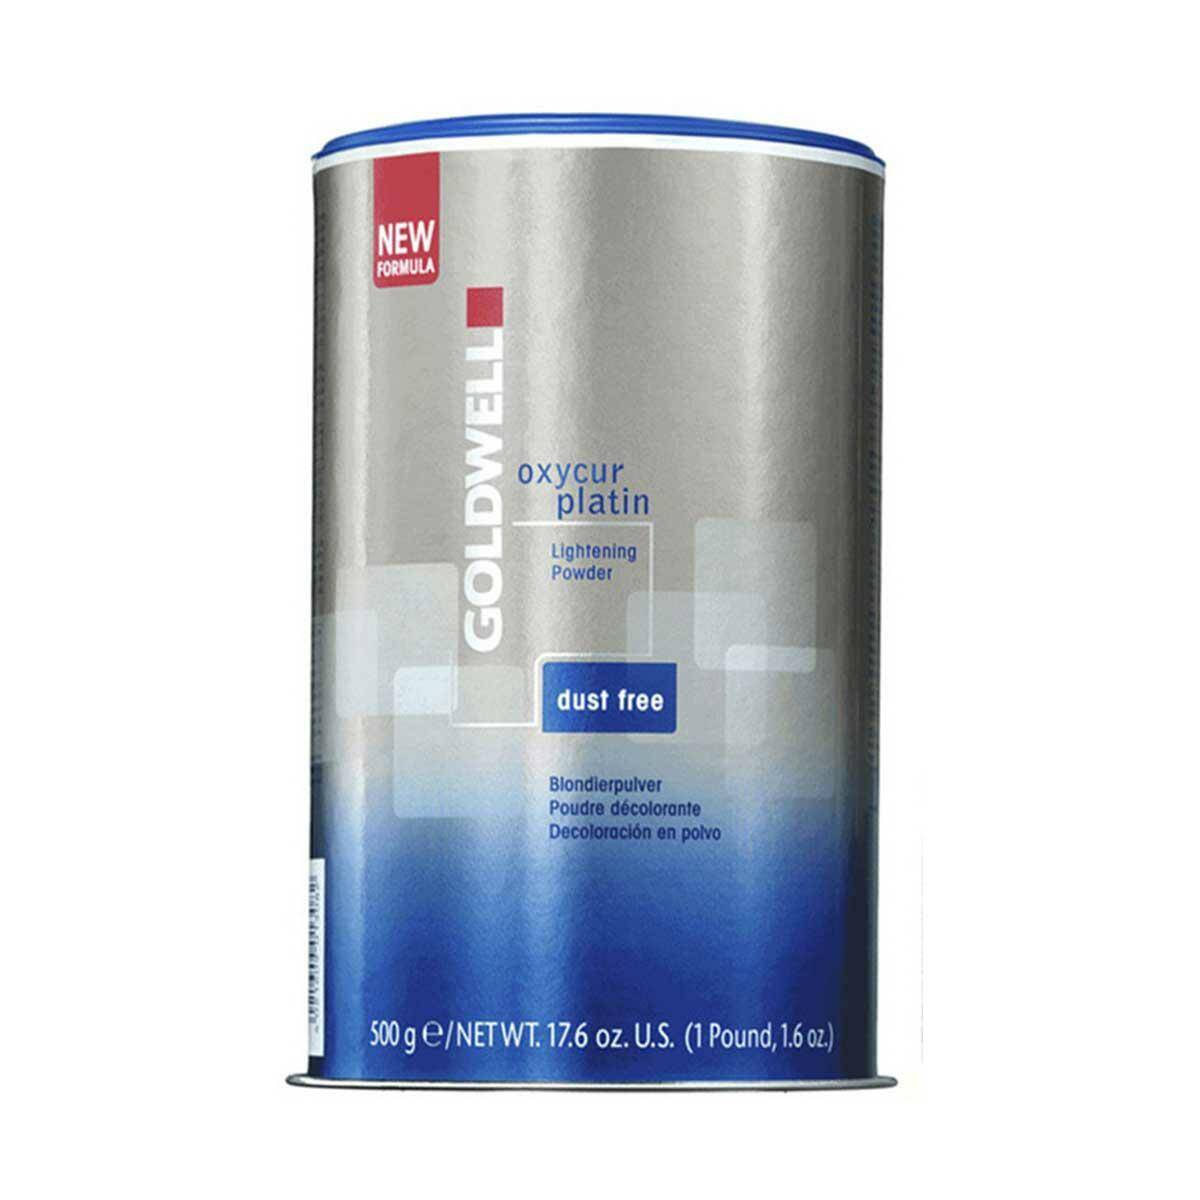 Goldwell Oxycur Platin Dust Free Rozjaśniacz do włosów w proszku 500g (Zdjęcie 1)